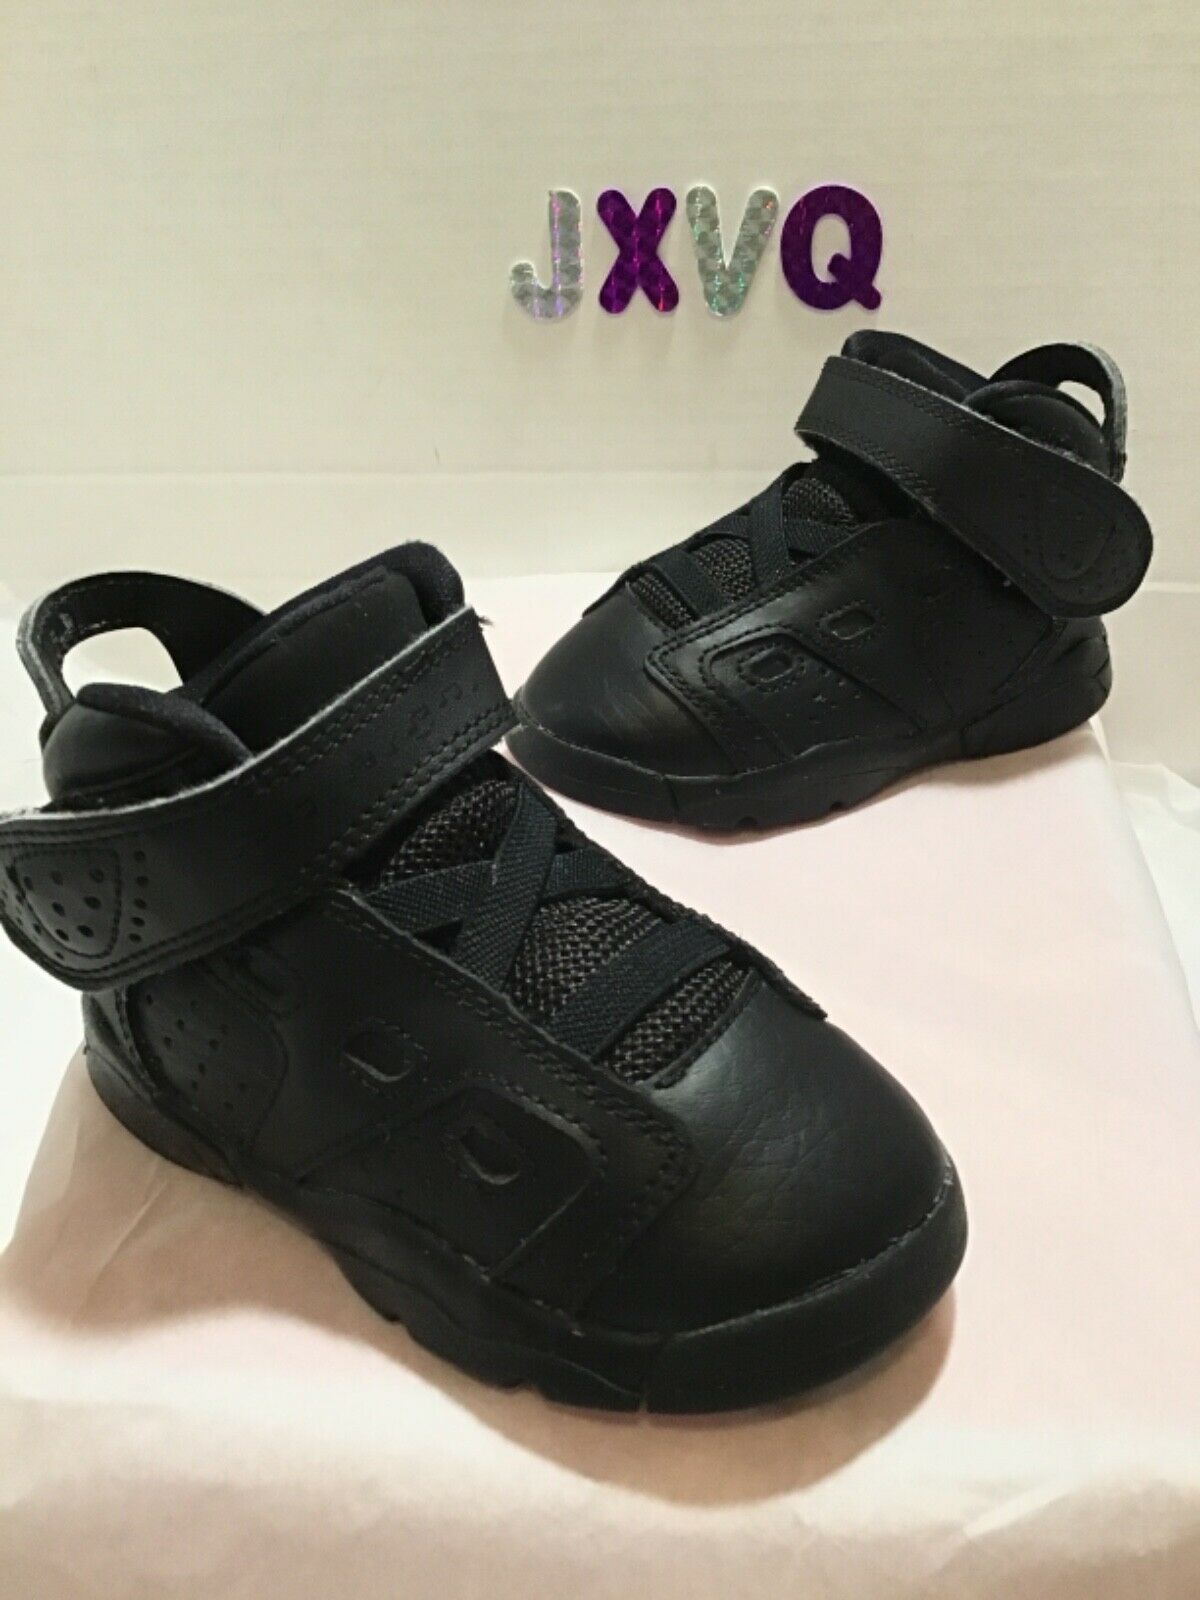 Jordan Toddler Shoes Size 6c